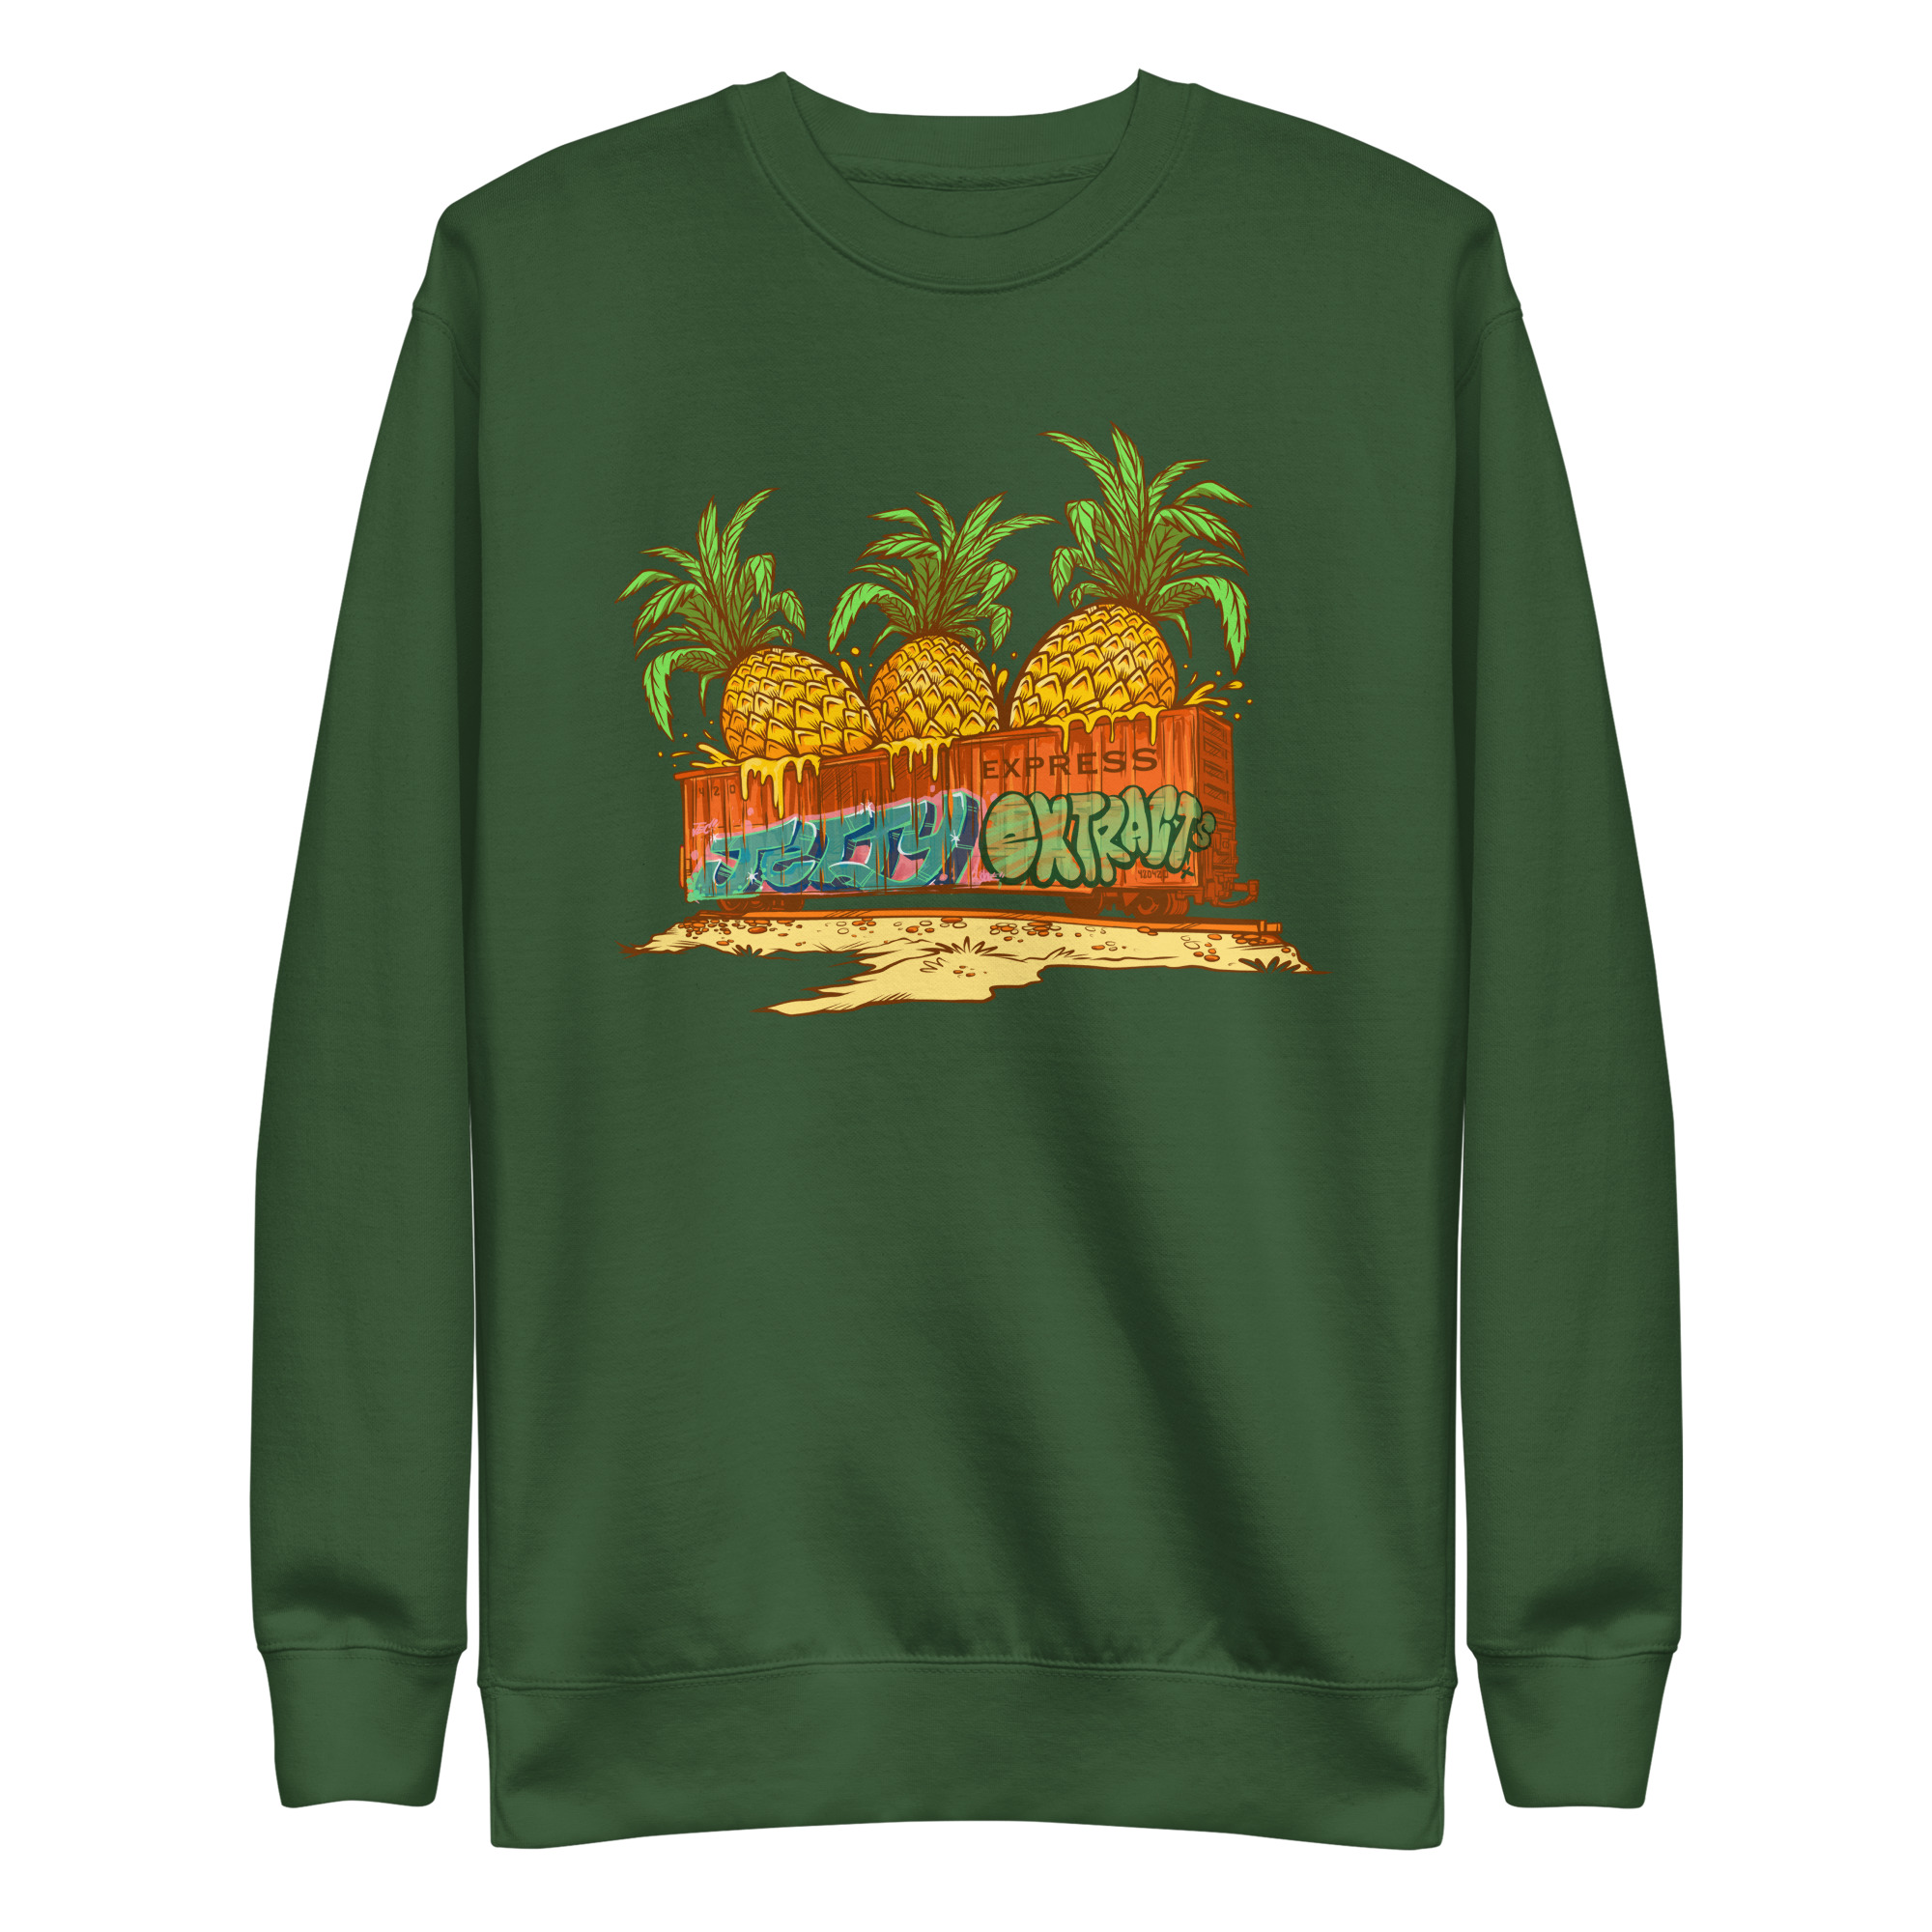 unisex-premium-sweatshirt-forest-green-front-64136bbe276a7.jpg